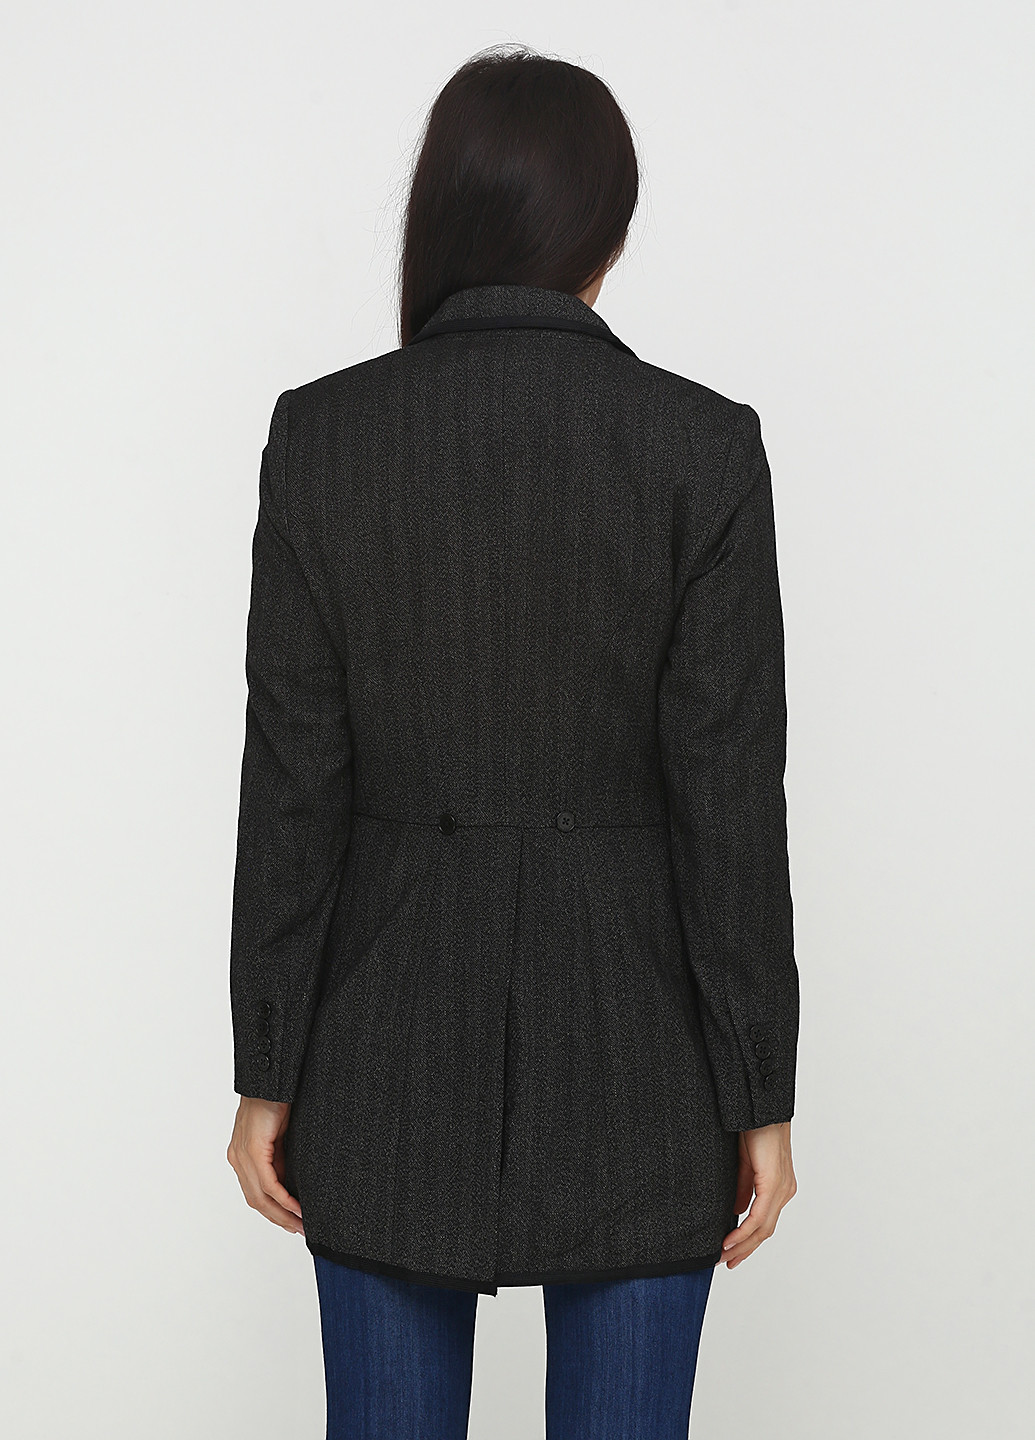 Грифельно-серый женский жакет Ralph Lauren меланжевый - демисезонный